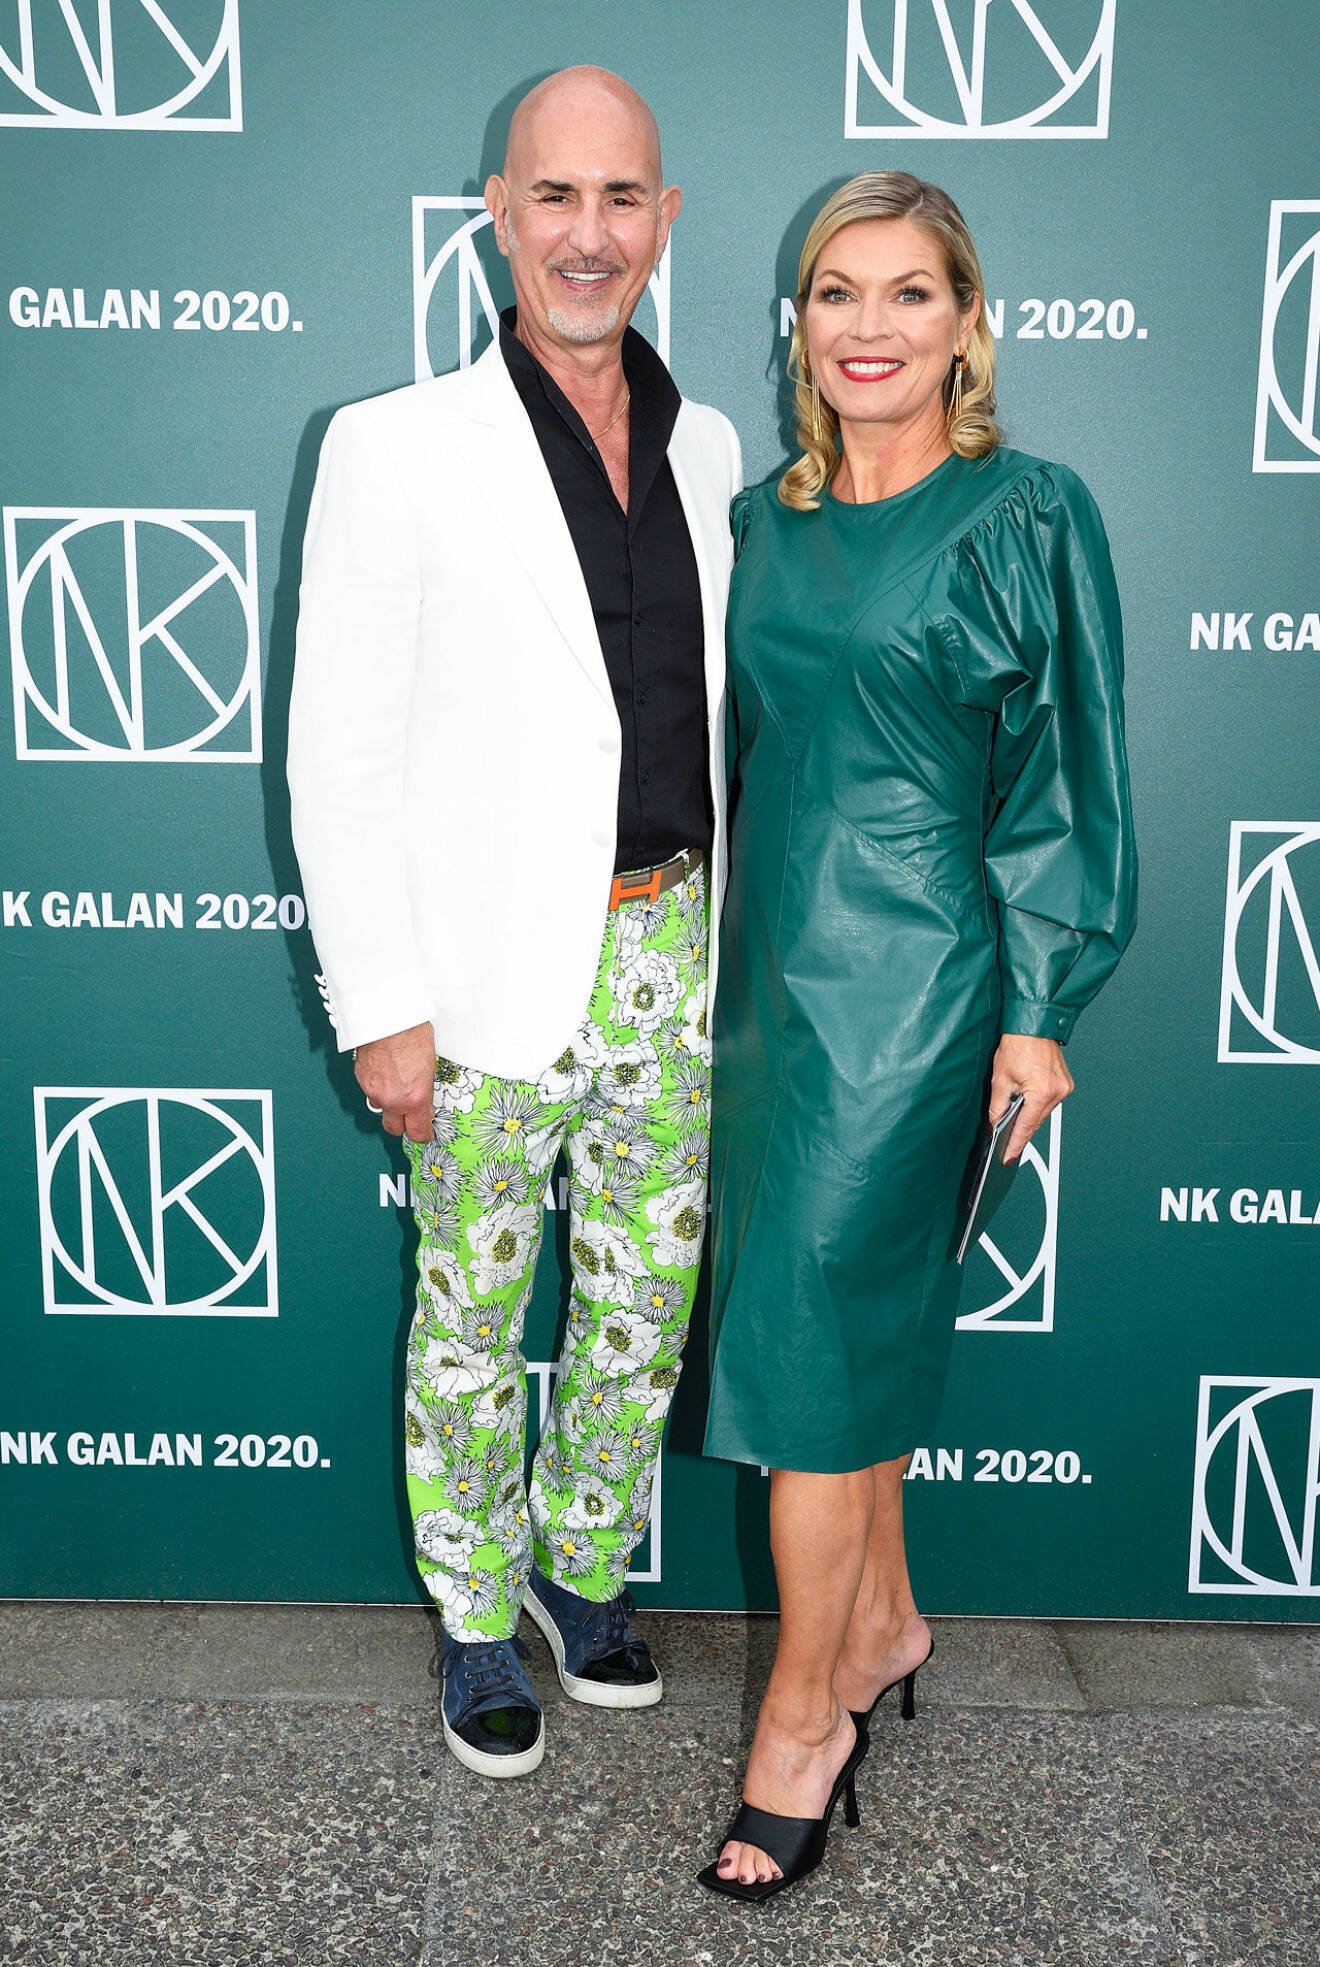 Kvällens festfixare Micael Bindefeld och Karin Wickberg, Marketing Director på Nordiska Kompaniet, välkomnade gästerna.